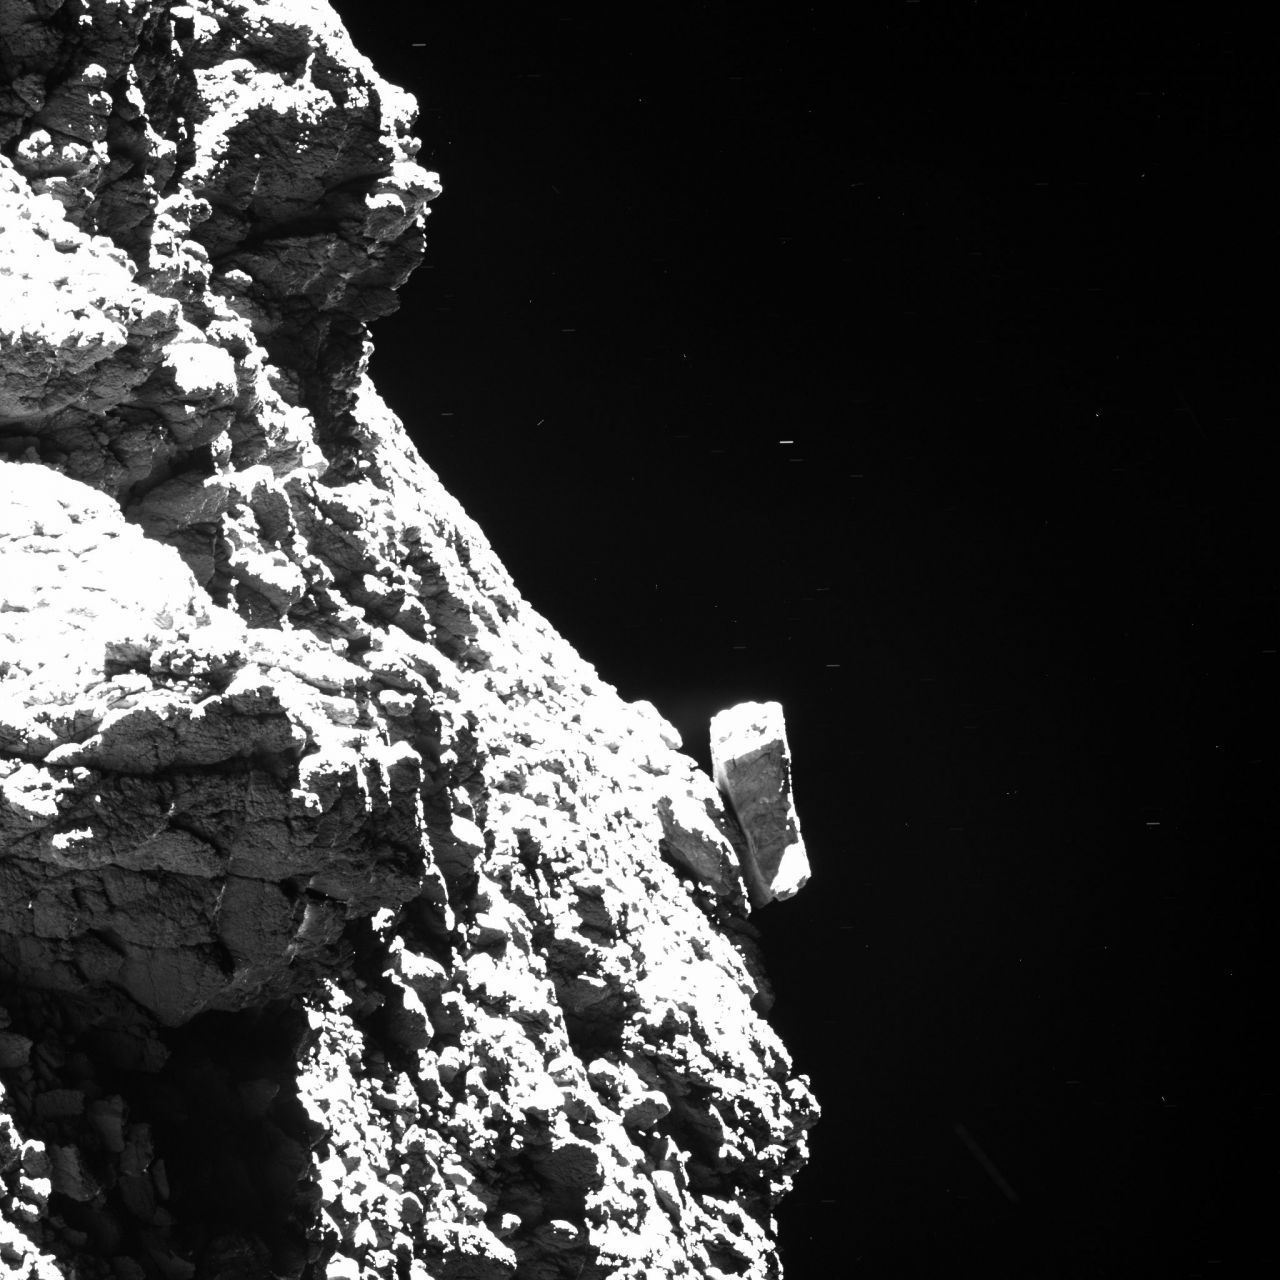 "Lass uns doch auf dem Tschurjumow-Gerassimenko landen!" Irgendjemand bei der ESA fand diese Idee gut, denn am 12. November 2014 setzte die Raumsonde Rosetta das kleine Landefahrzeug Philae ab, das sich dem Kometen mit einem Meter pro Sekunde nährte und nach sieben Stunden aufsetzte.